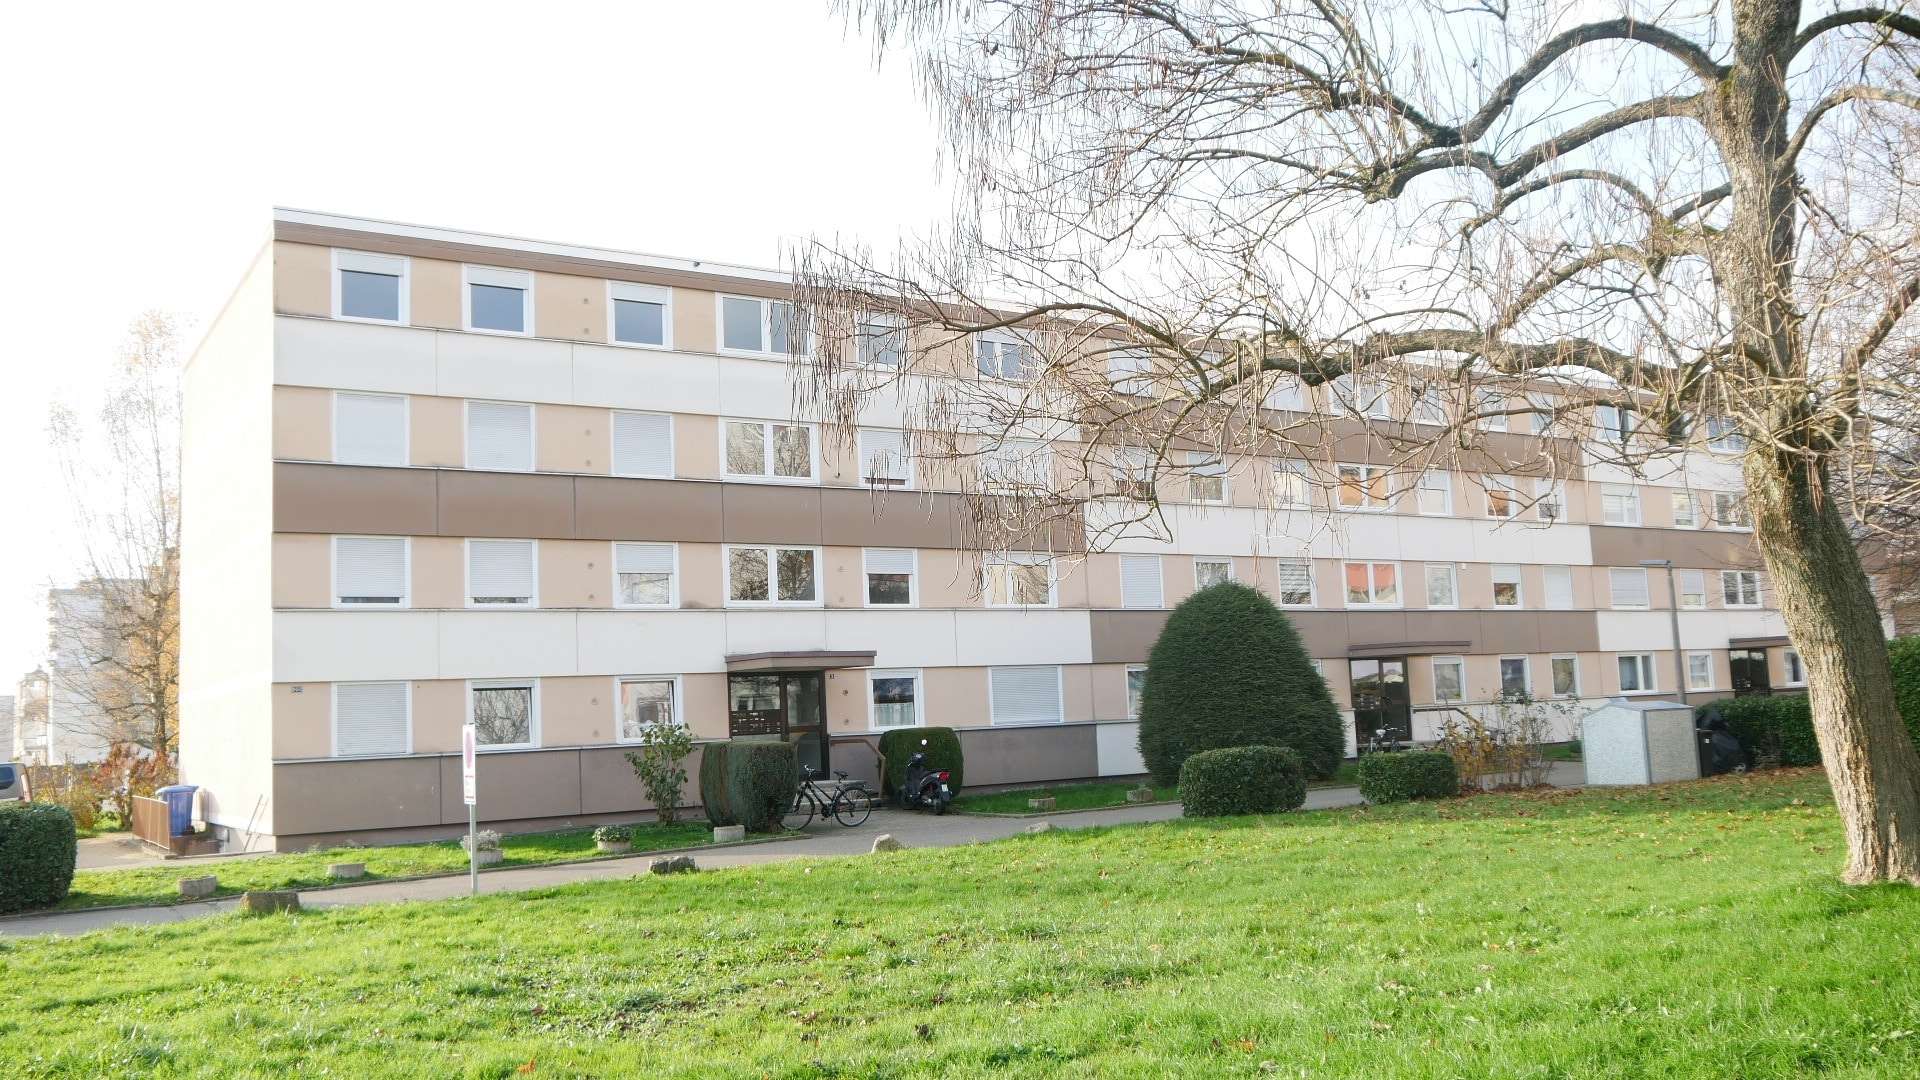 Ansicht - Etagenwohnung in 79618 Rheinfelden mit 86m² als Kapitalanlage kaufen